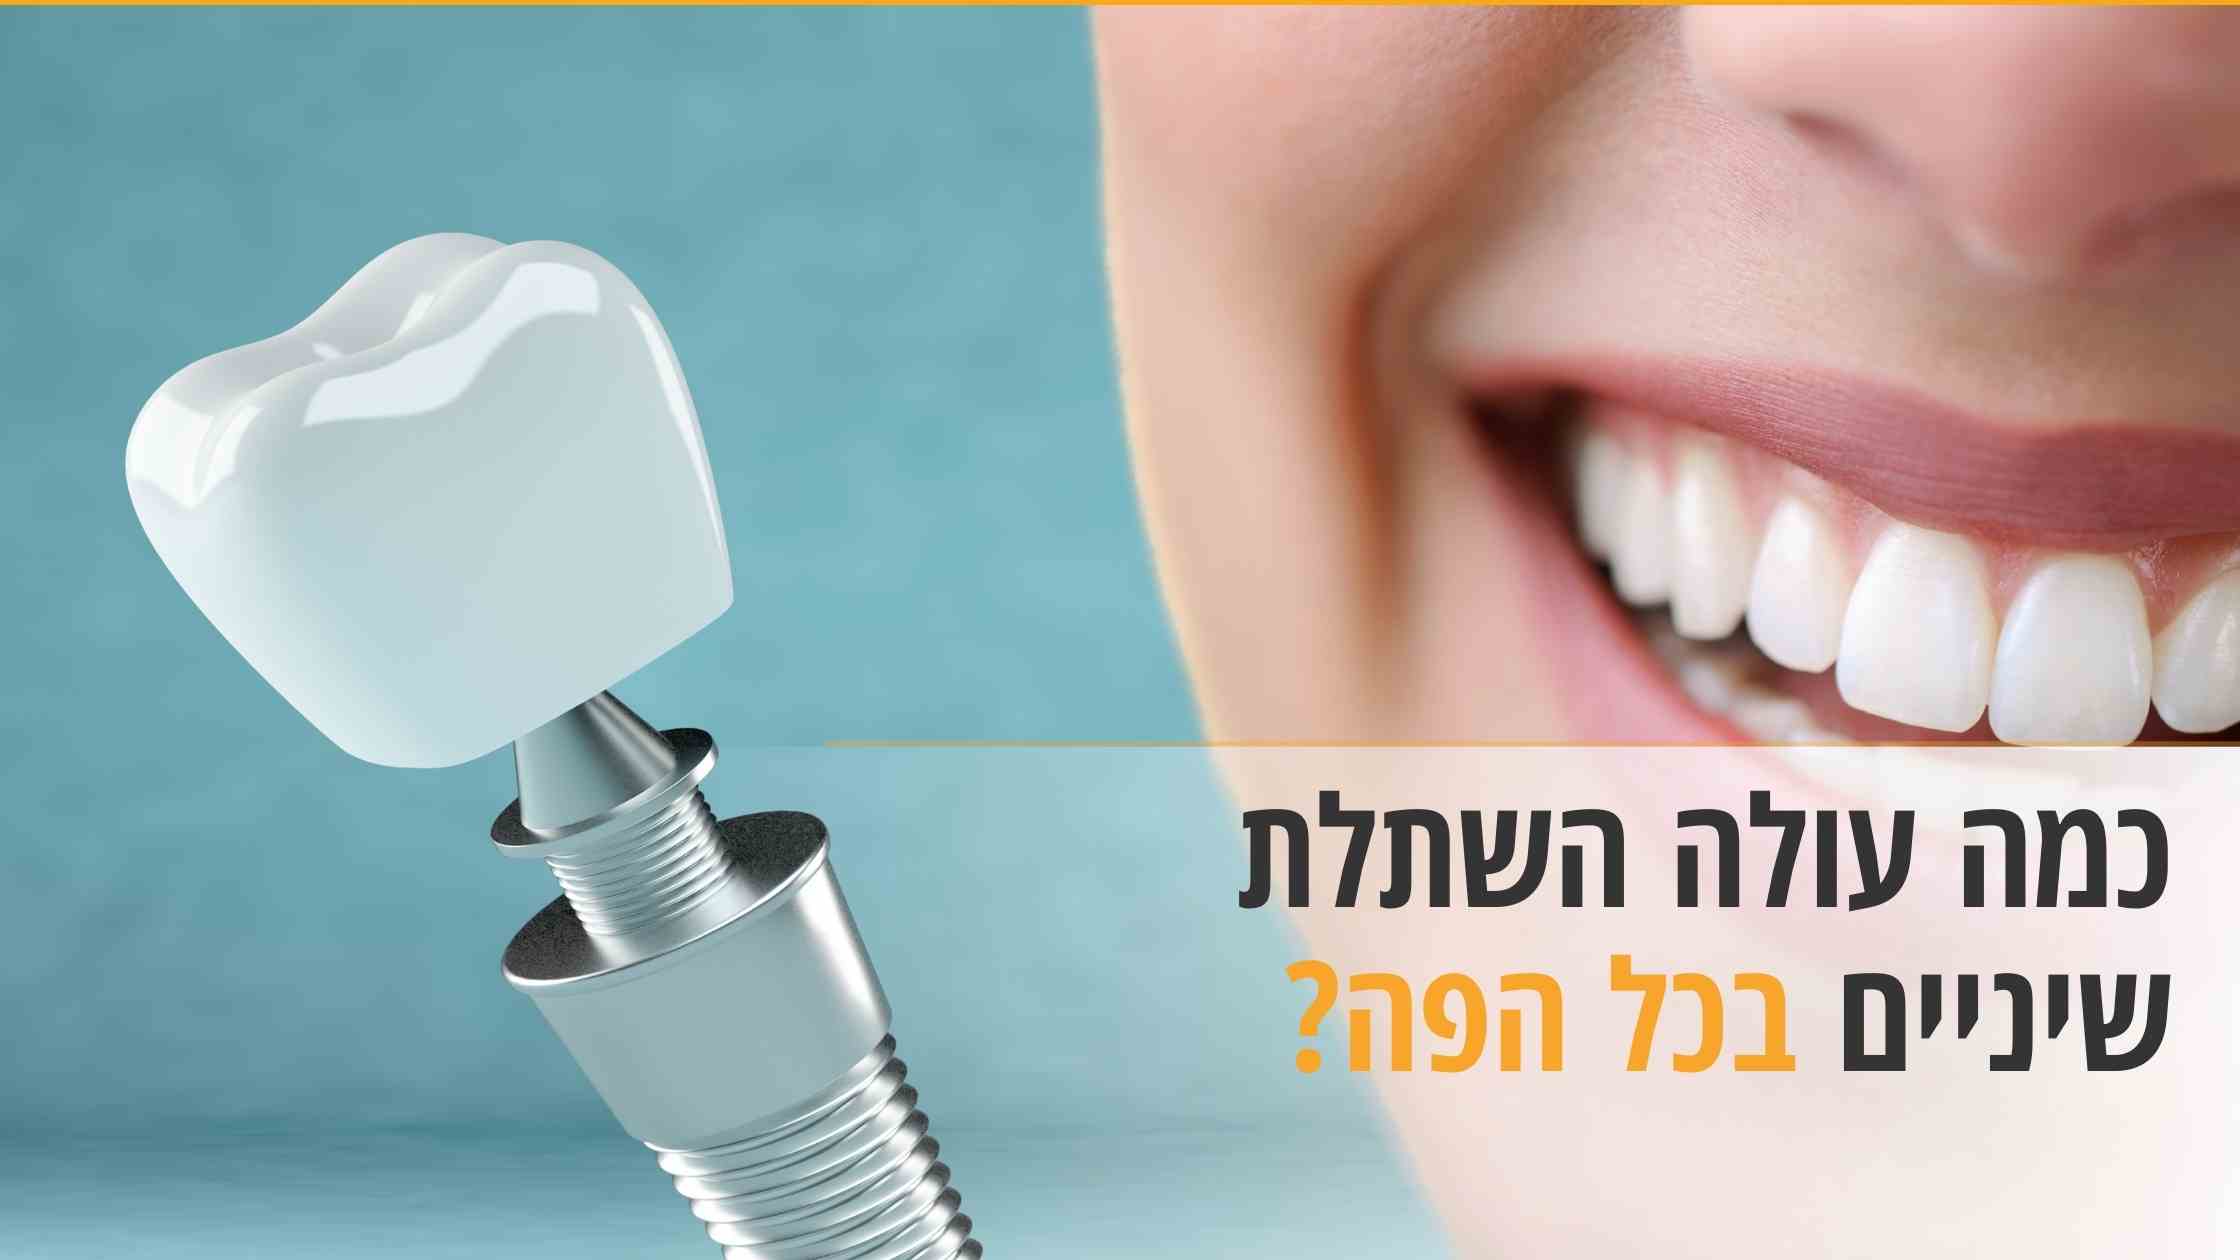 כמה עולה השתלת שיניים בכל הפה